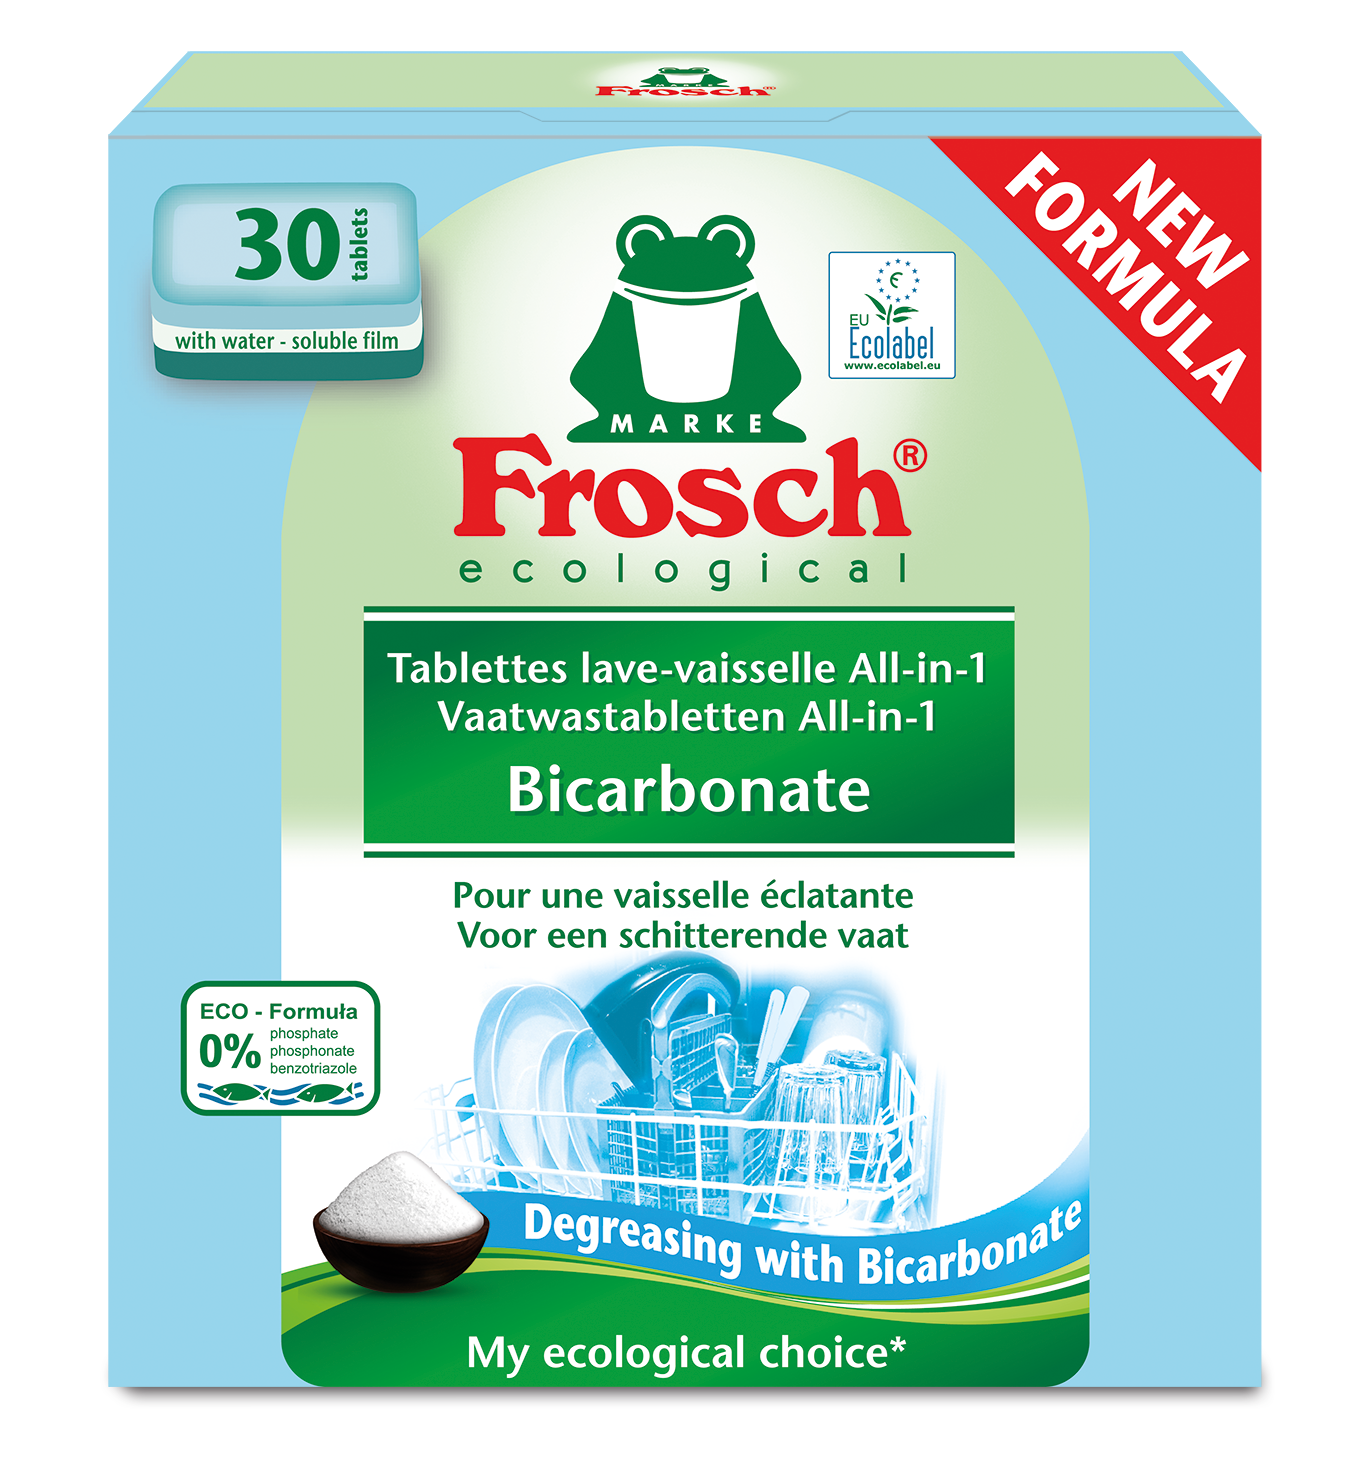 Tablettes lave-vaisselle all-in-one FROSCH sont vendues par 30     
au prix conseillé de 7,49€.